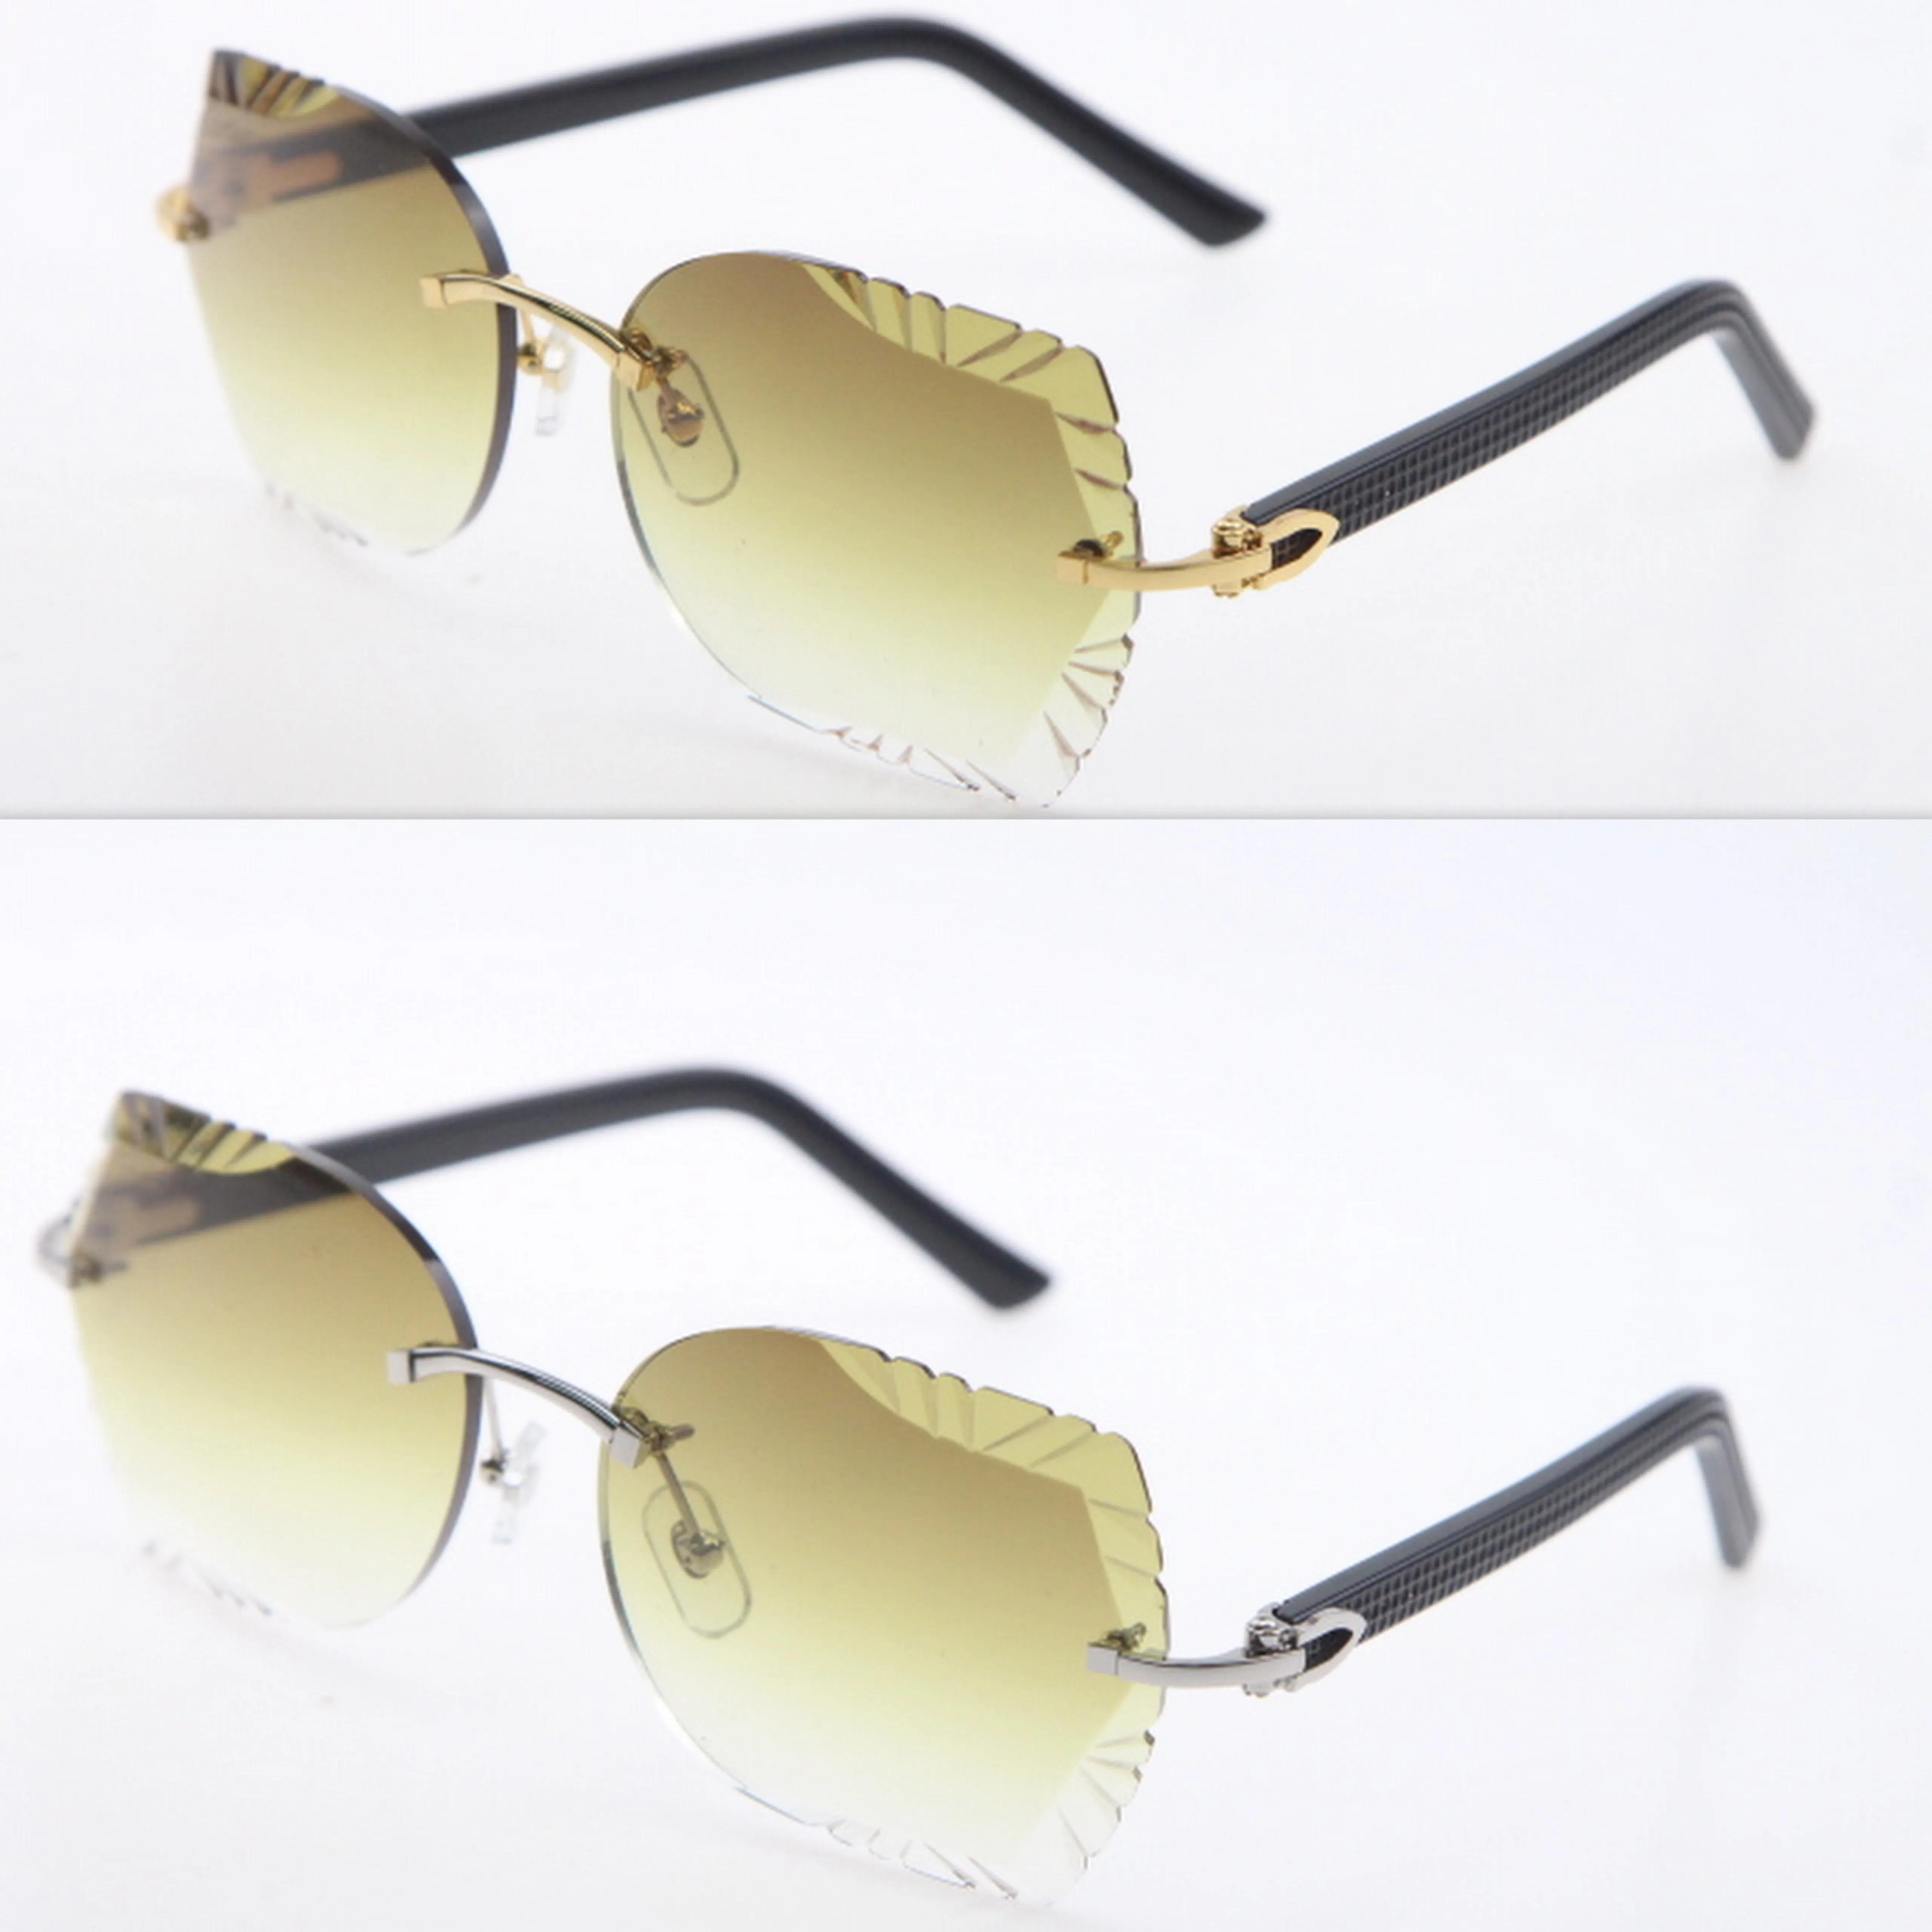 림리스 조각 렌즈 격자 무늬 판자 선글라스 남성과 여성 새 안경 유니탄 태양 안경 고양이 눈 눈 눈가식 패션 액세서리 245I